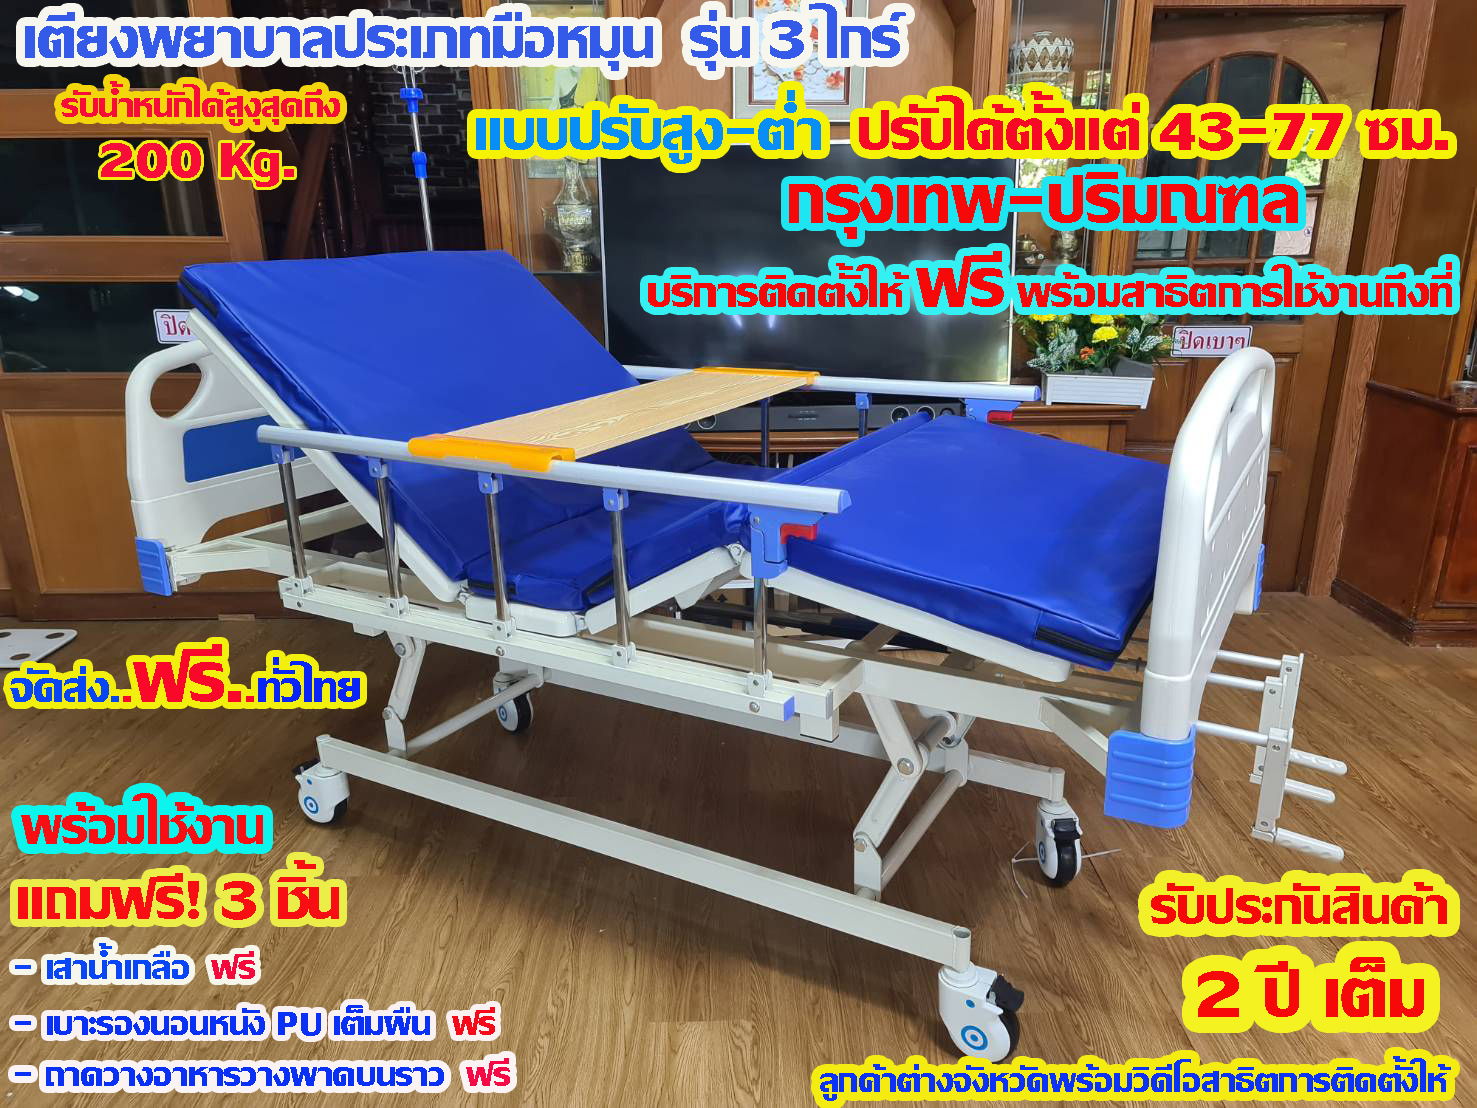 เตียงพยาบาล/เตียงผู้ป่วย/เตียงผู้สูงอายุประเภทมือหมุน รุ่น 3 ไกร์ แบบปรับยกสูง-ต่ำได้( Multi-function elderly bed DD220)